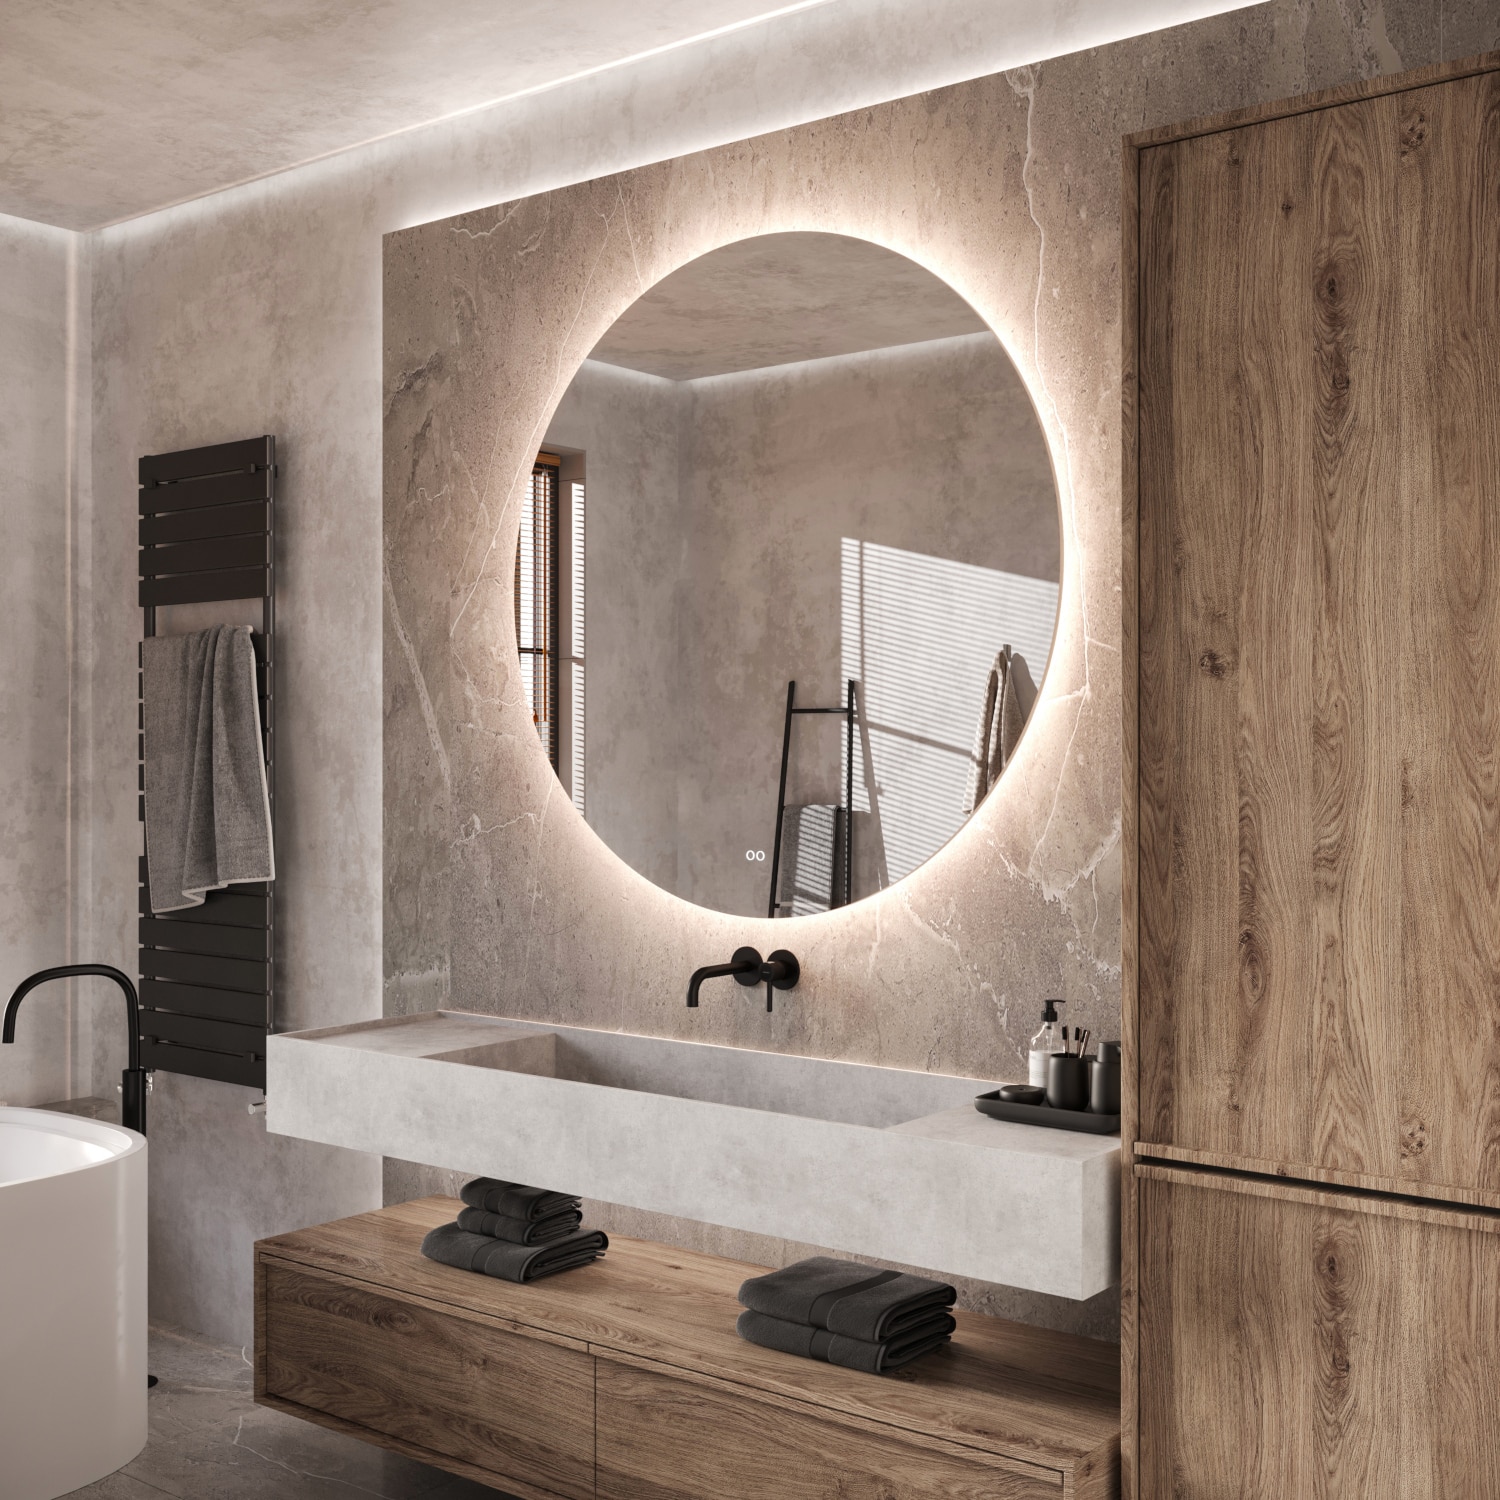 Deze trendy ronde badkamer spiegel heeft een diameter van 120 cm en heeft een diepte van slechts 3 cm